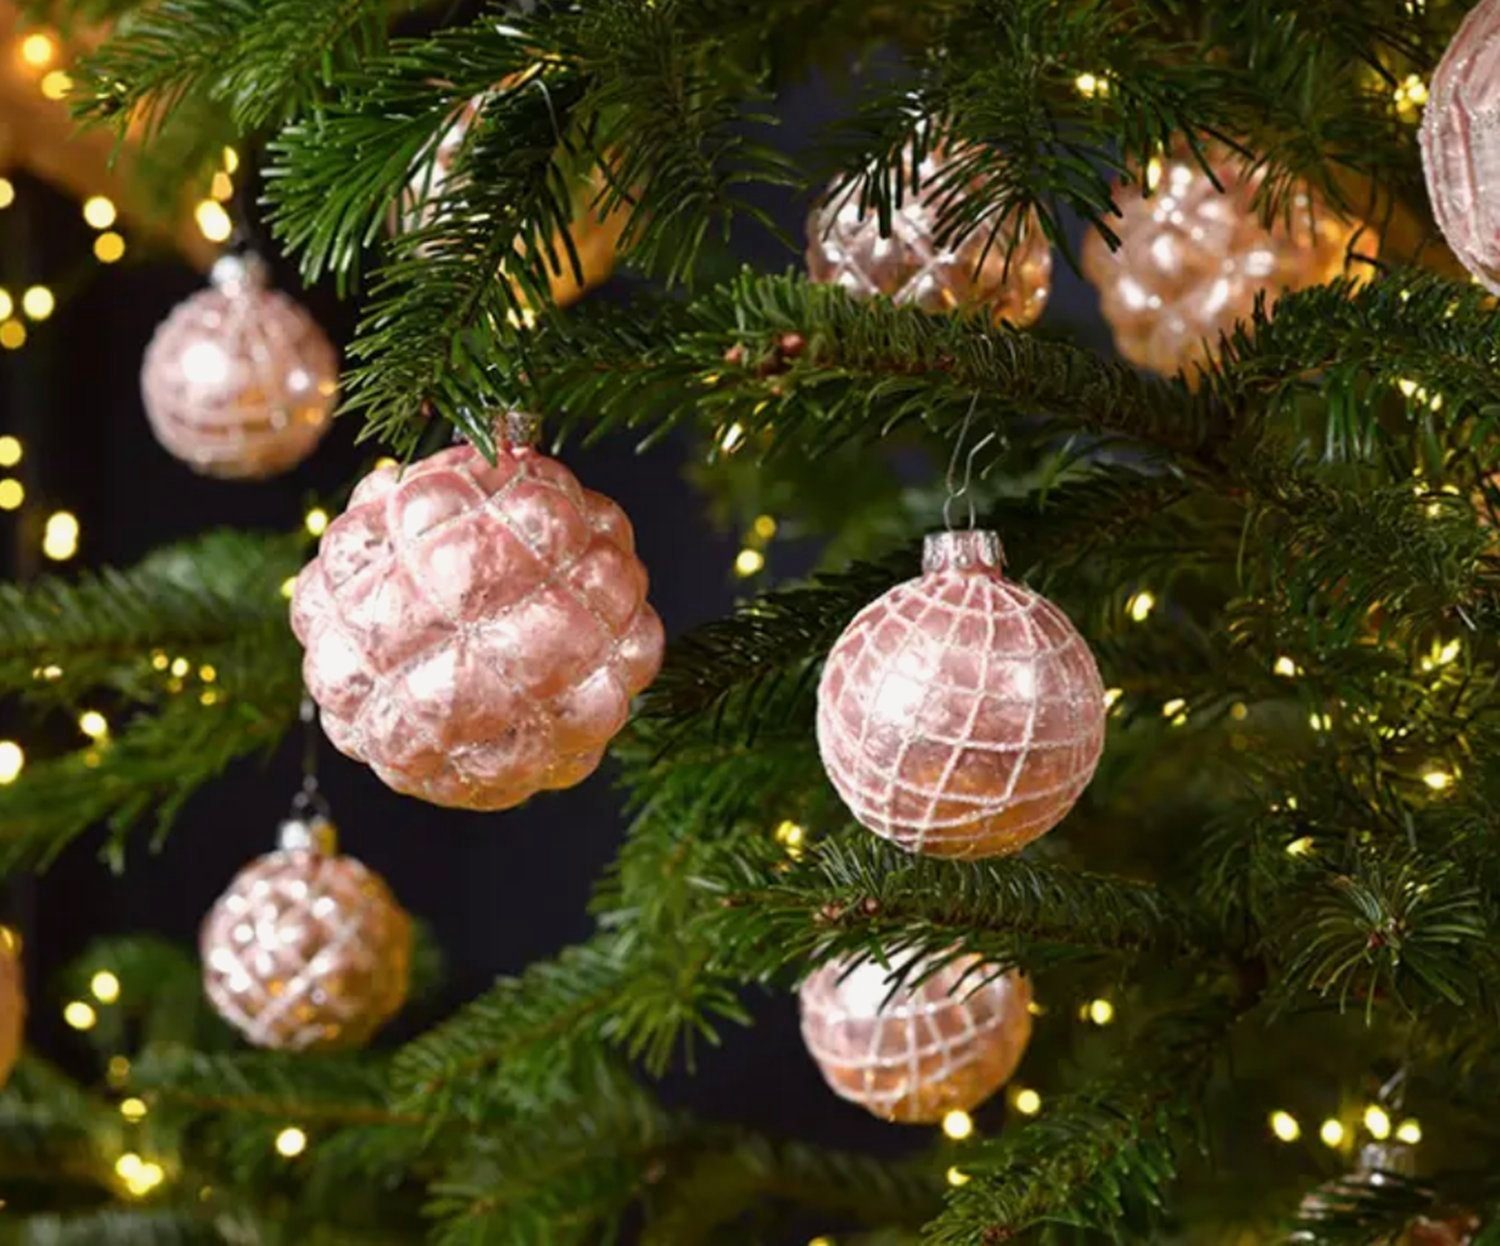 Taschen4life Weihnachtsbaumkugel Christbaumkugeln aus Glas im antik Landhaus Stil, 12 teiliges Set, 8x8x8cm, Advent und Weihnachten Deko rose